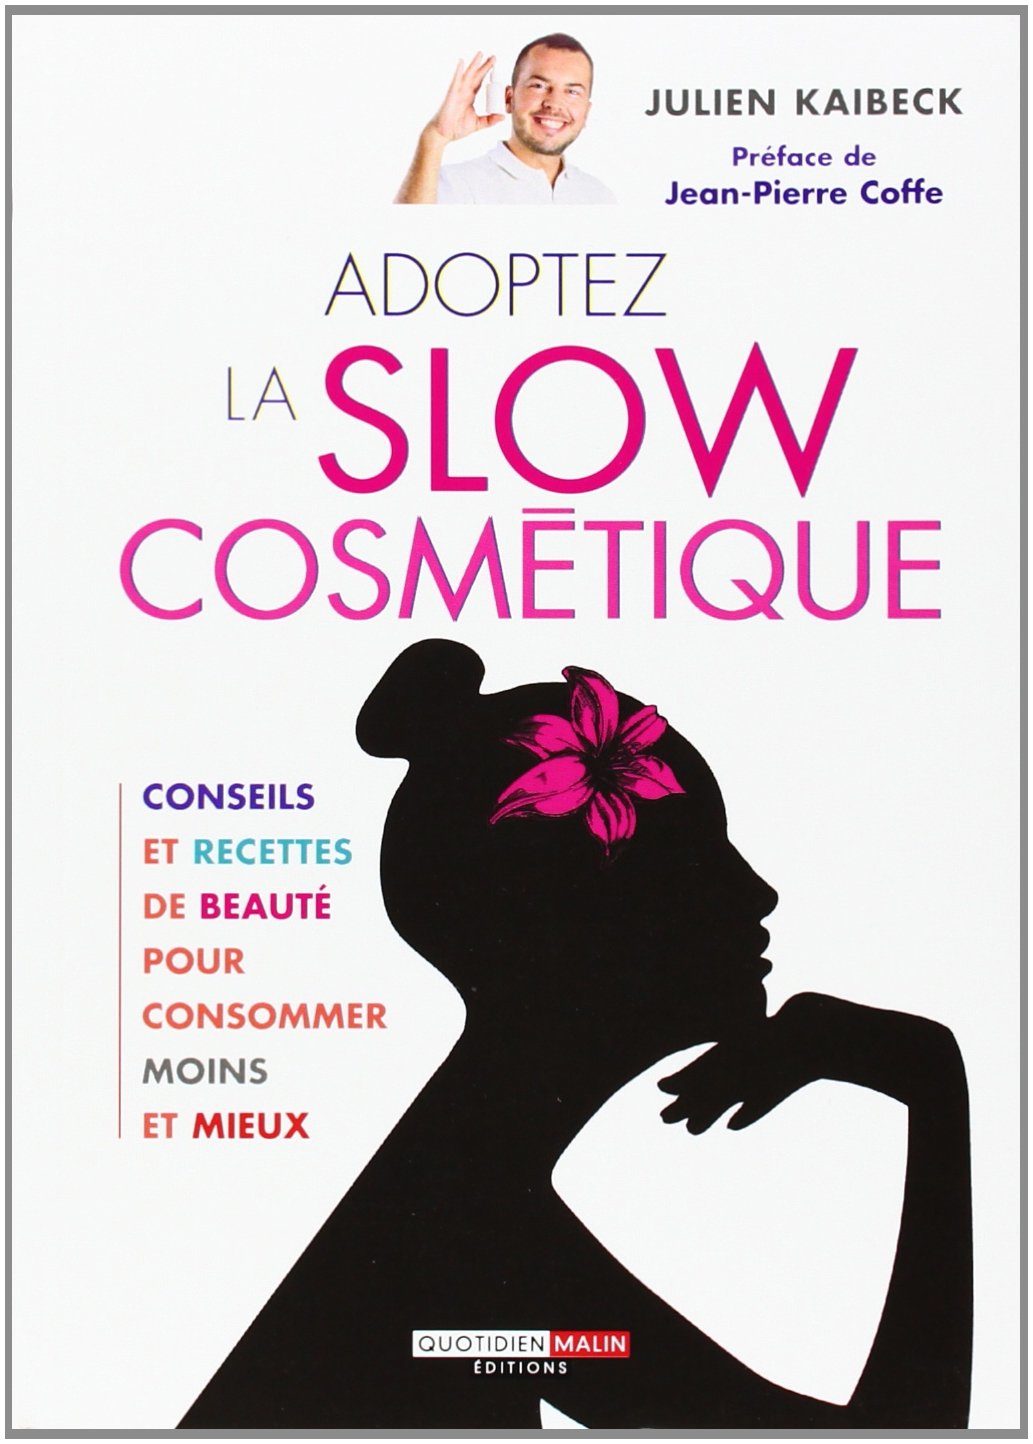 slow-cosmetique-4363033